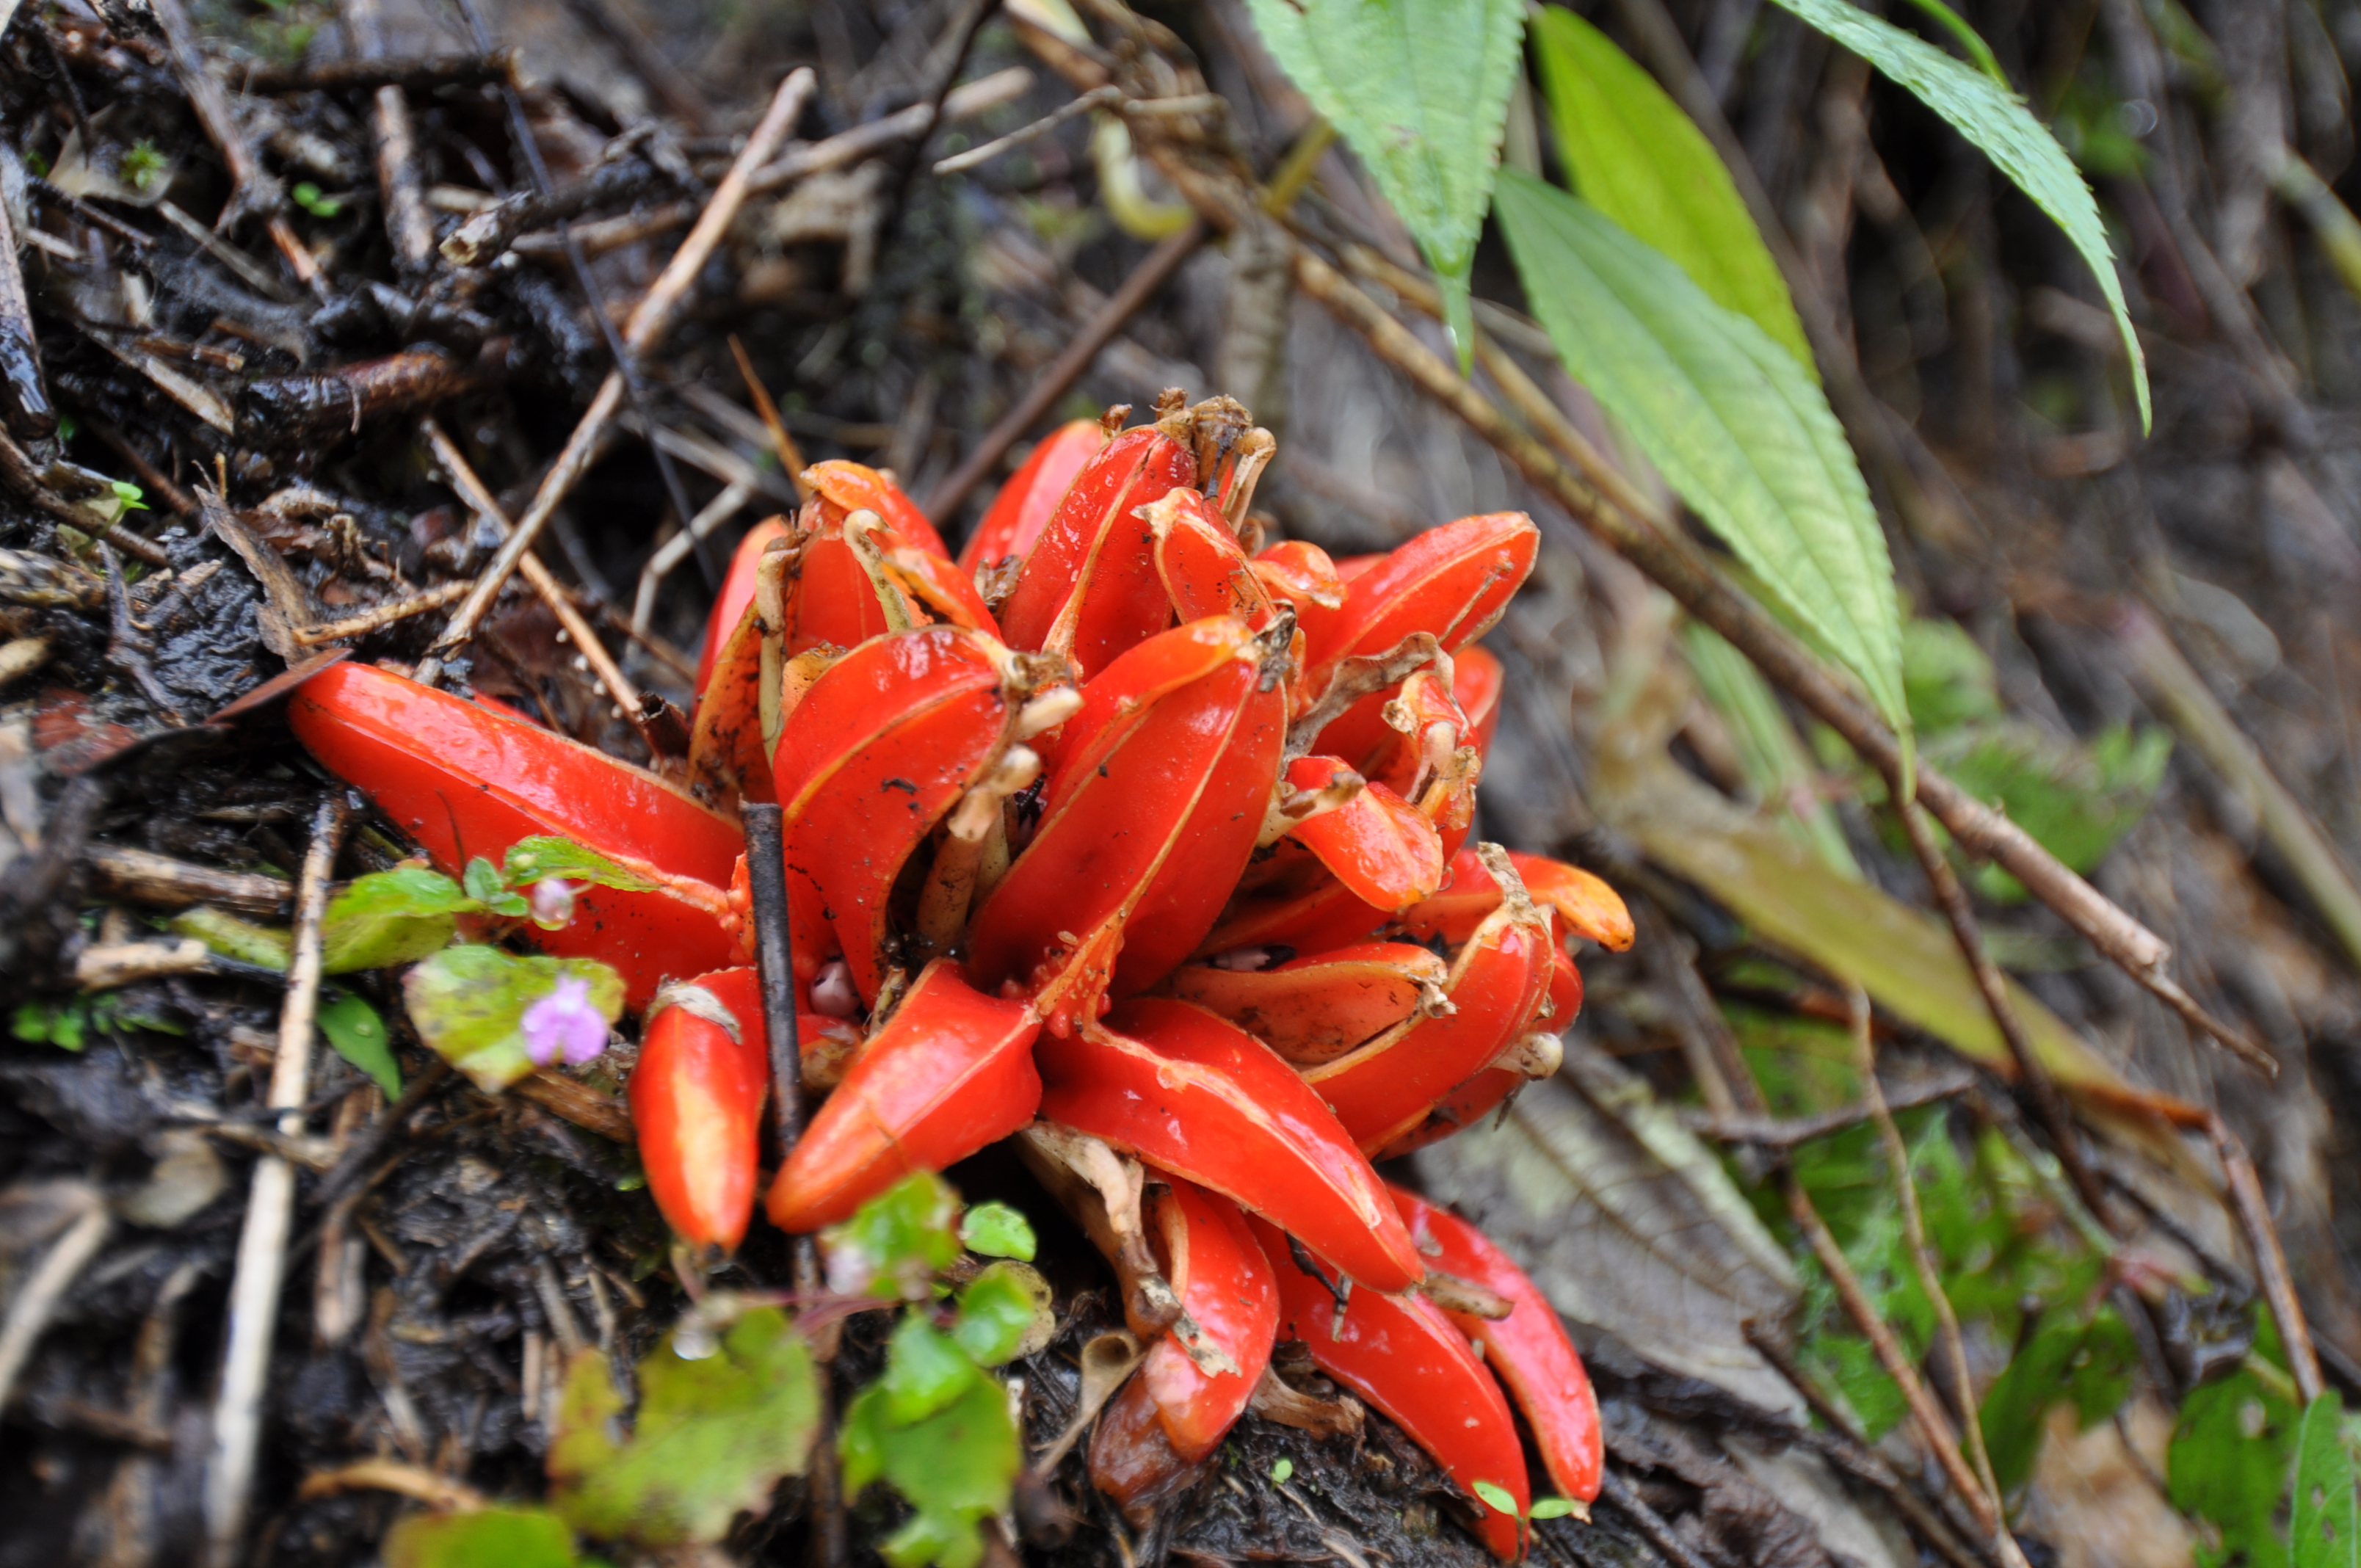 Zingiberales. Red plant